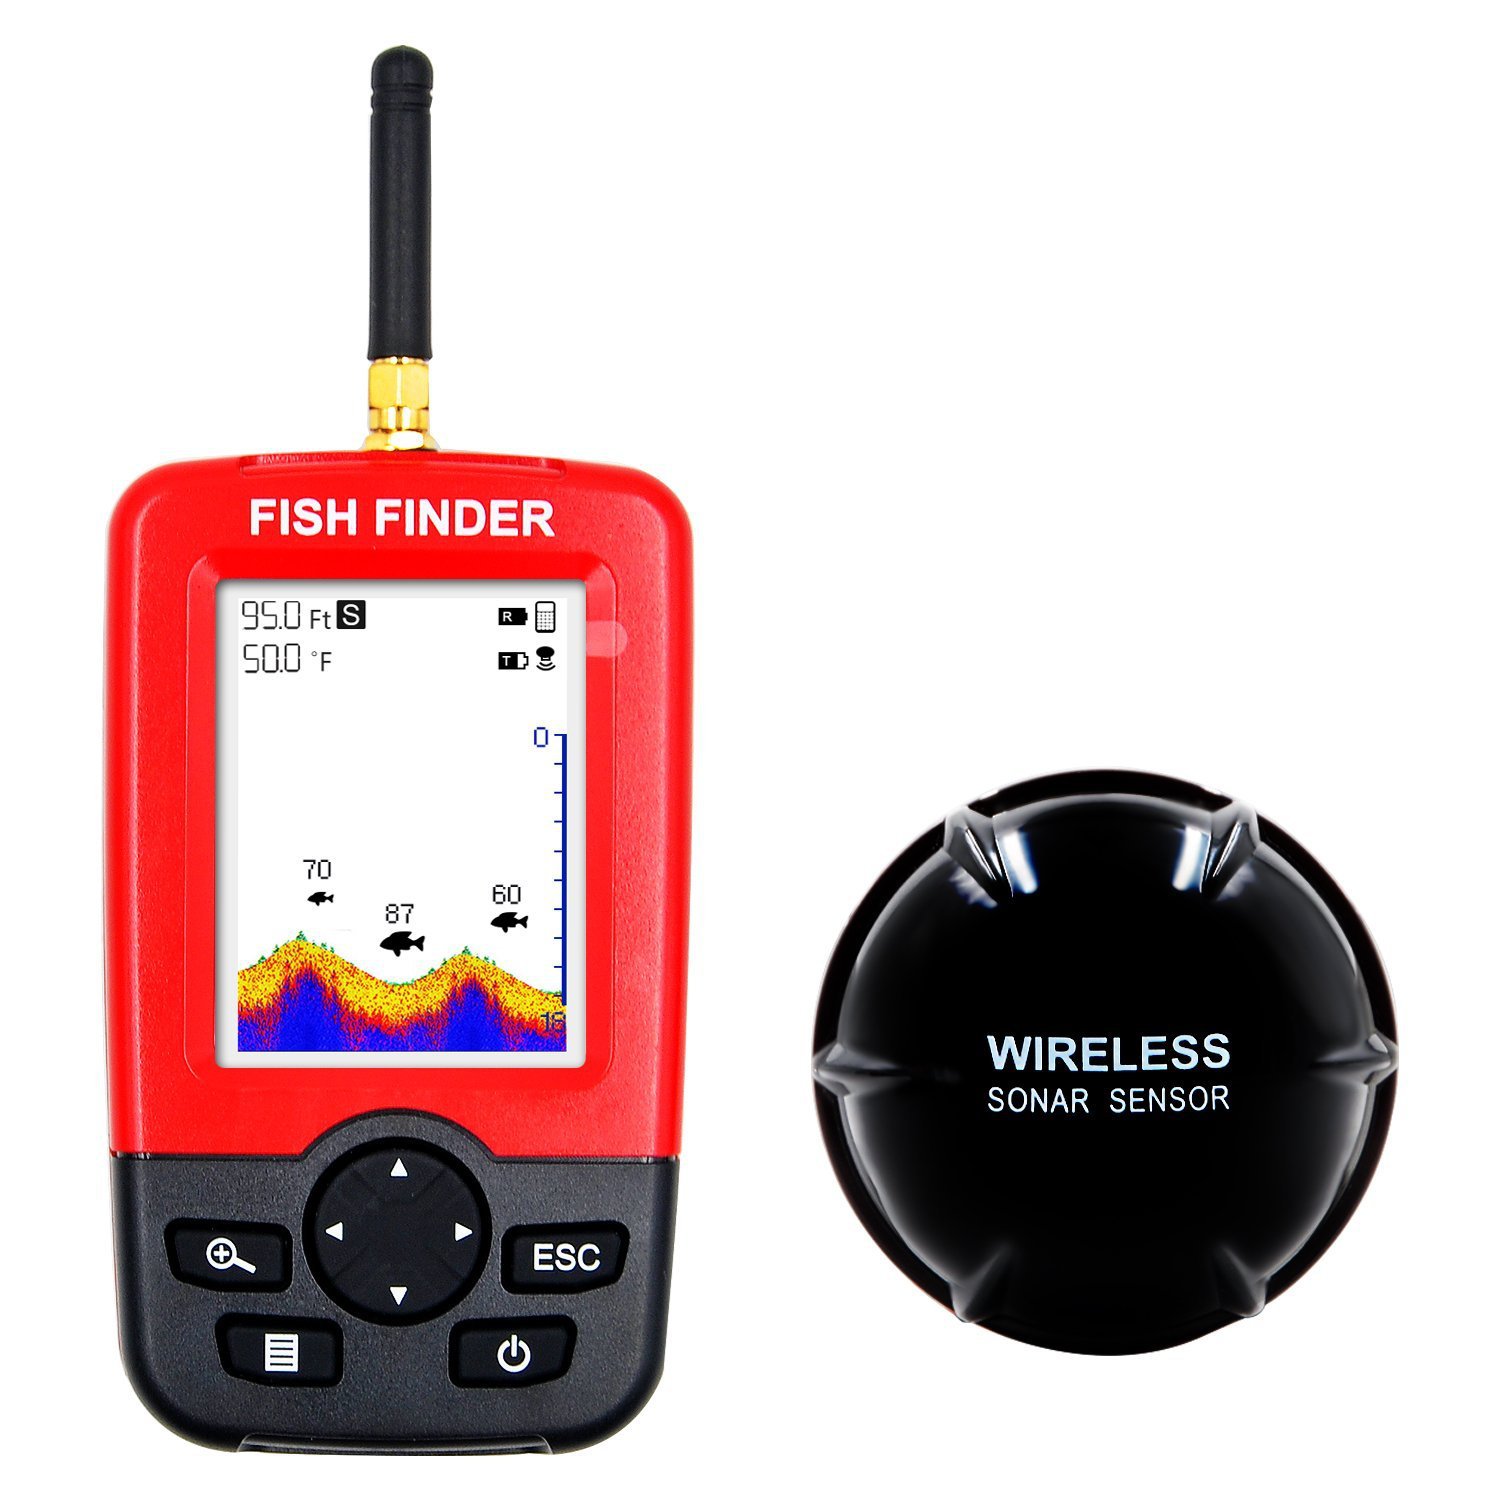 fishfinder无线探鱼器厂家直销品牌入驻速卖通亚马逊一件代发声呐